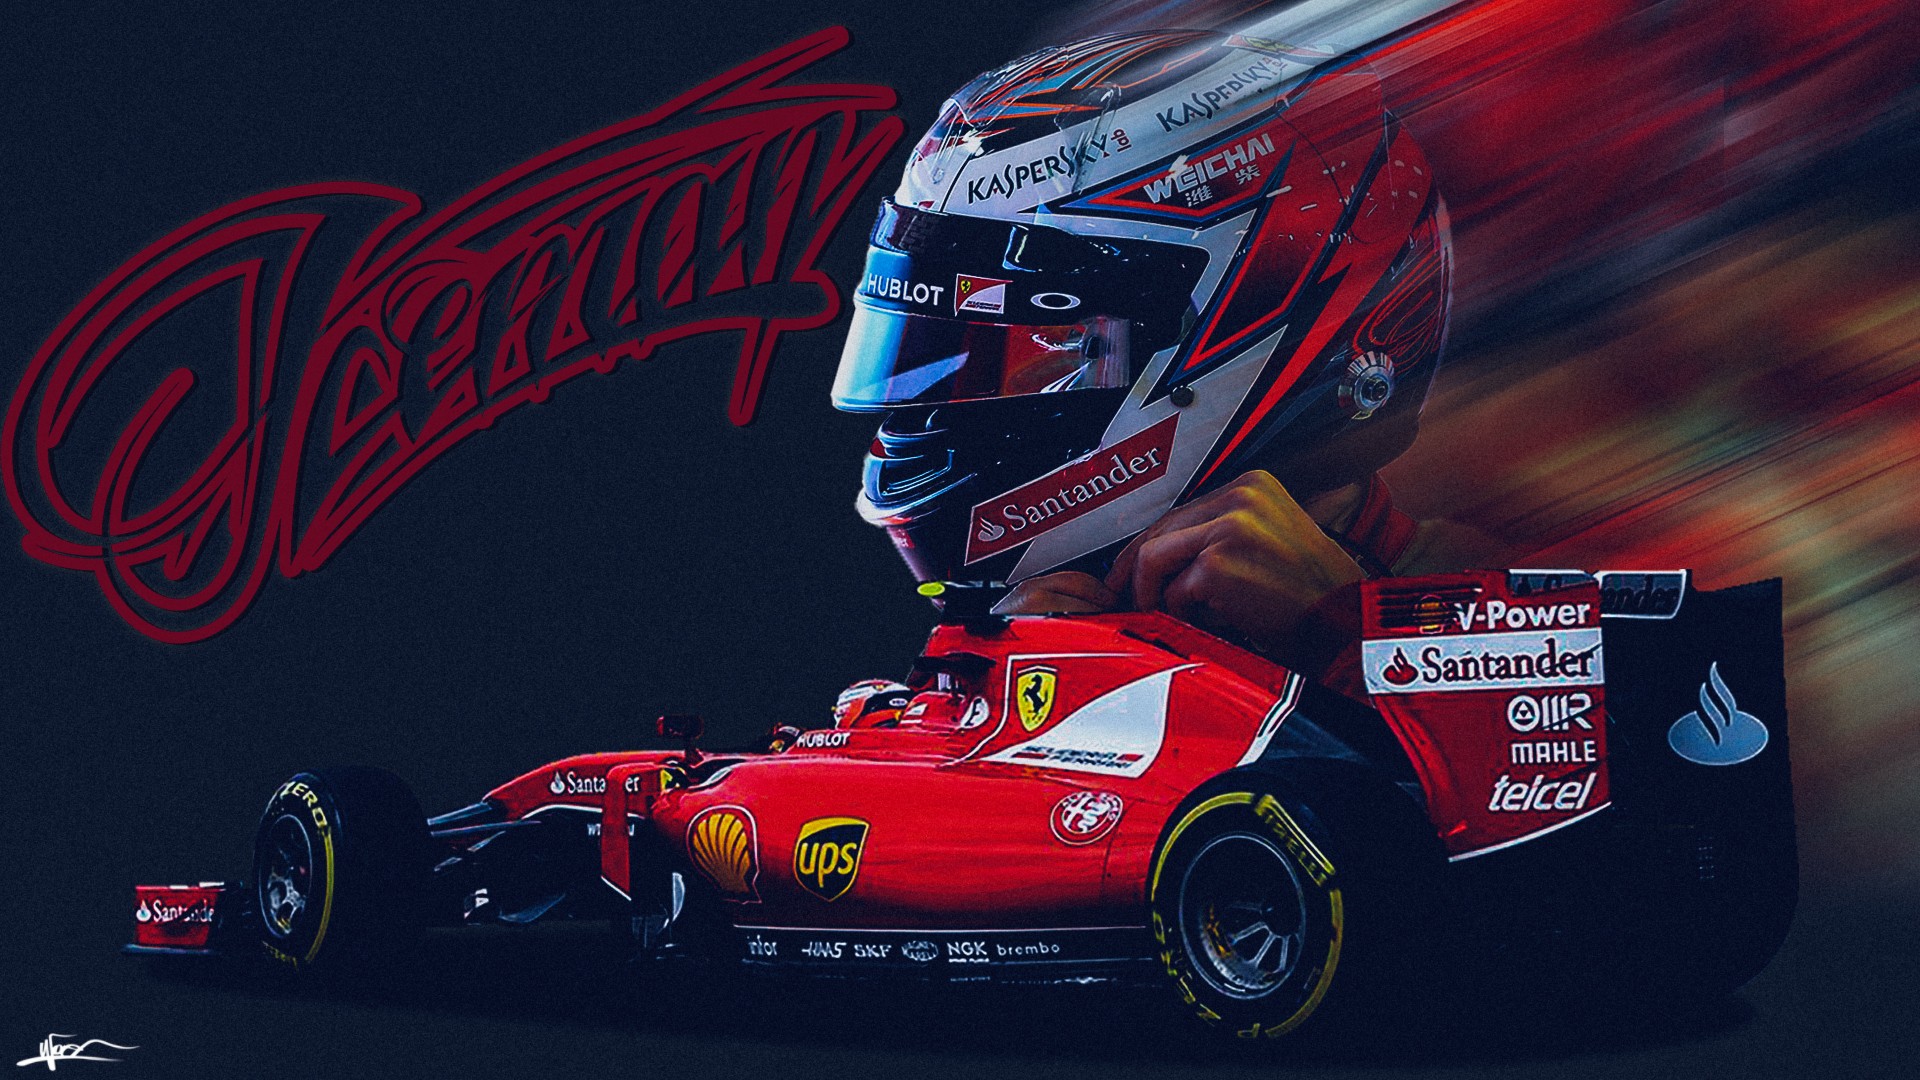 Kimi Raikkonen, Kimi, Raikkonen, Ferrari, Scuderia Ferrari, Formula 1